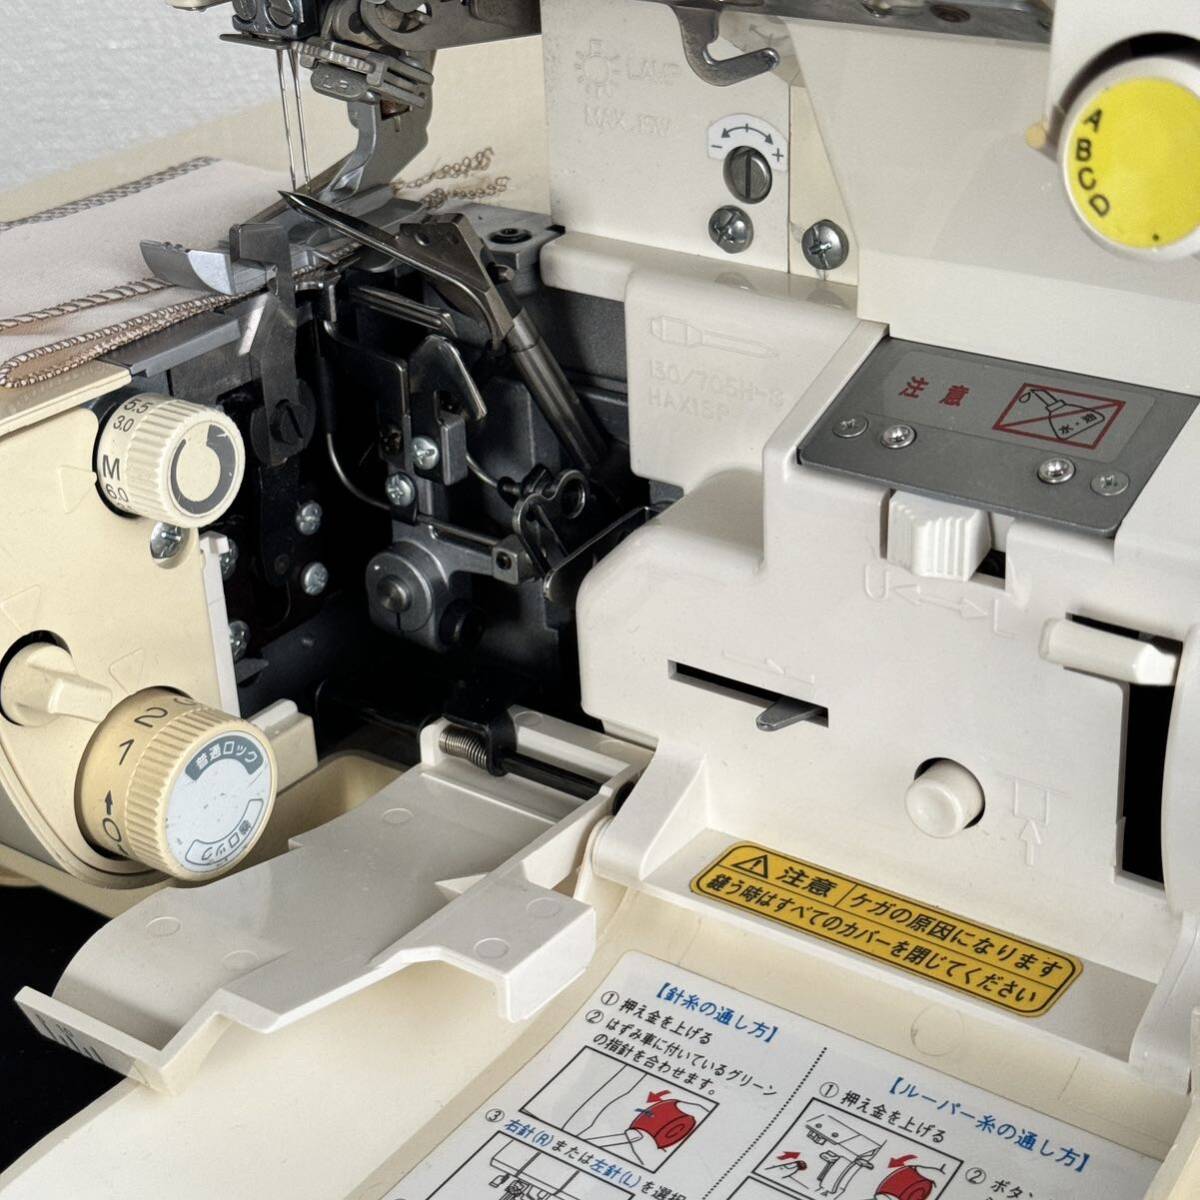 USED 中古 整備調整済 日本製 ベビーロック 糸取物語 BL65 2本針4本糸ロック フットコントローラー付き エアスルー 自動糸調子機能の画像7